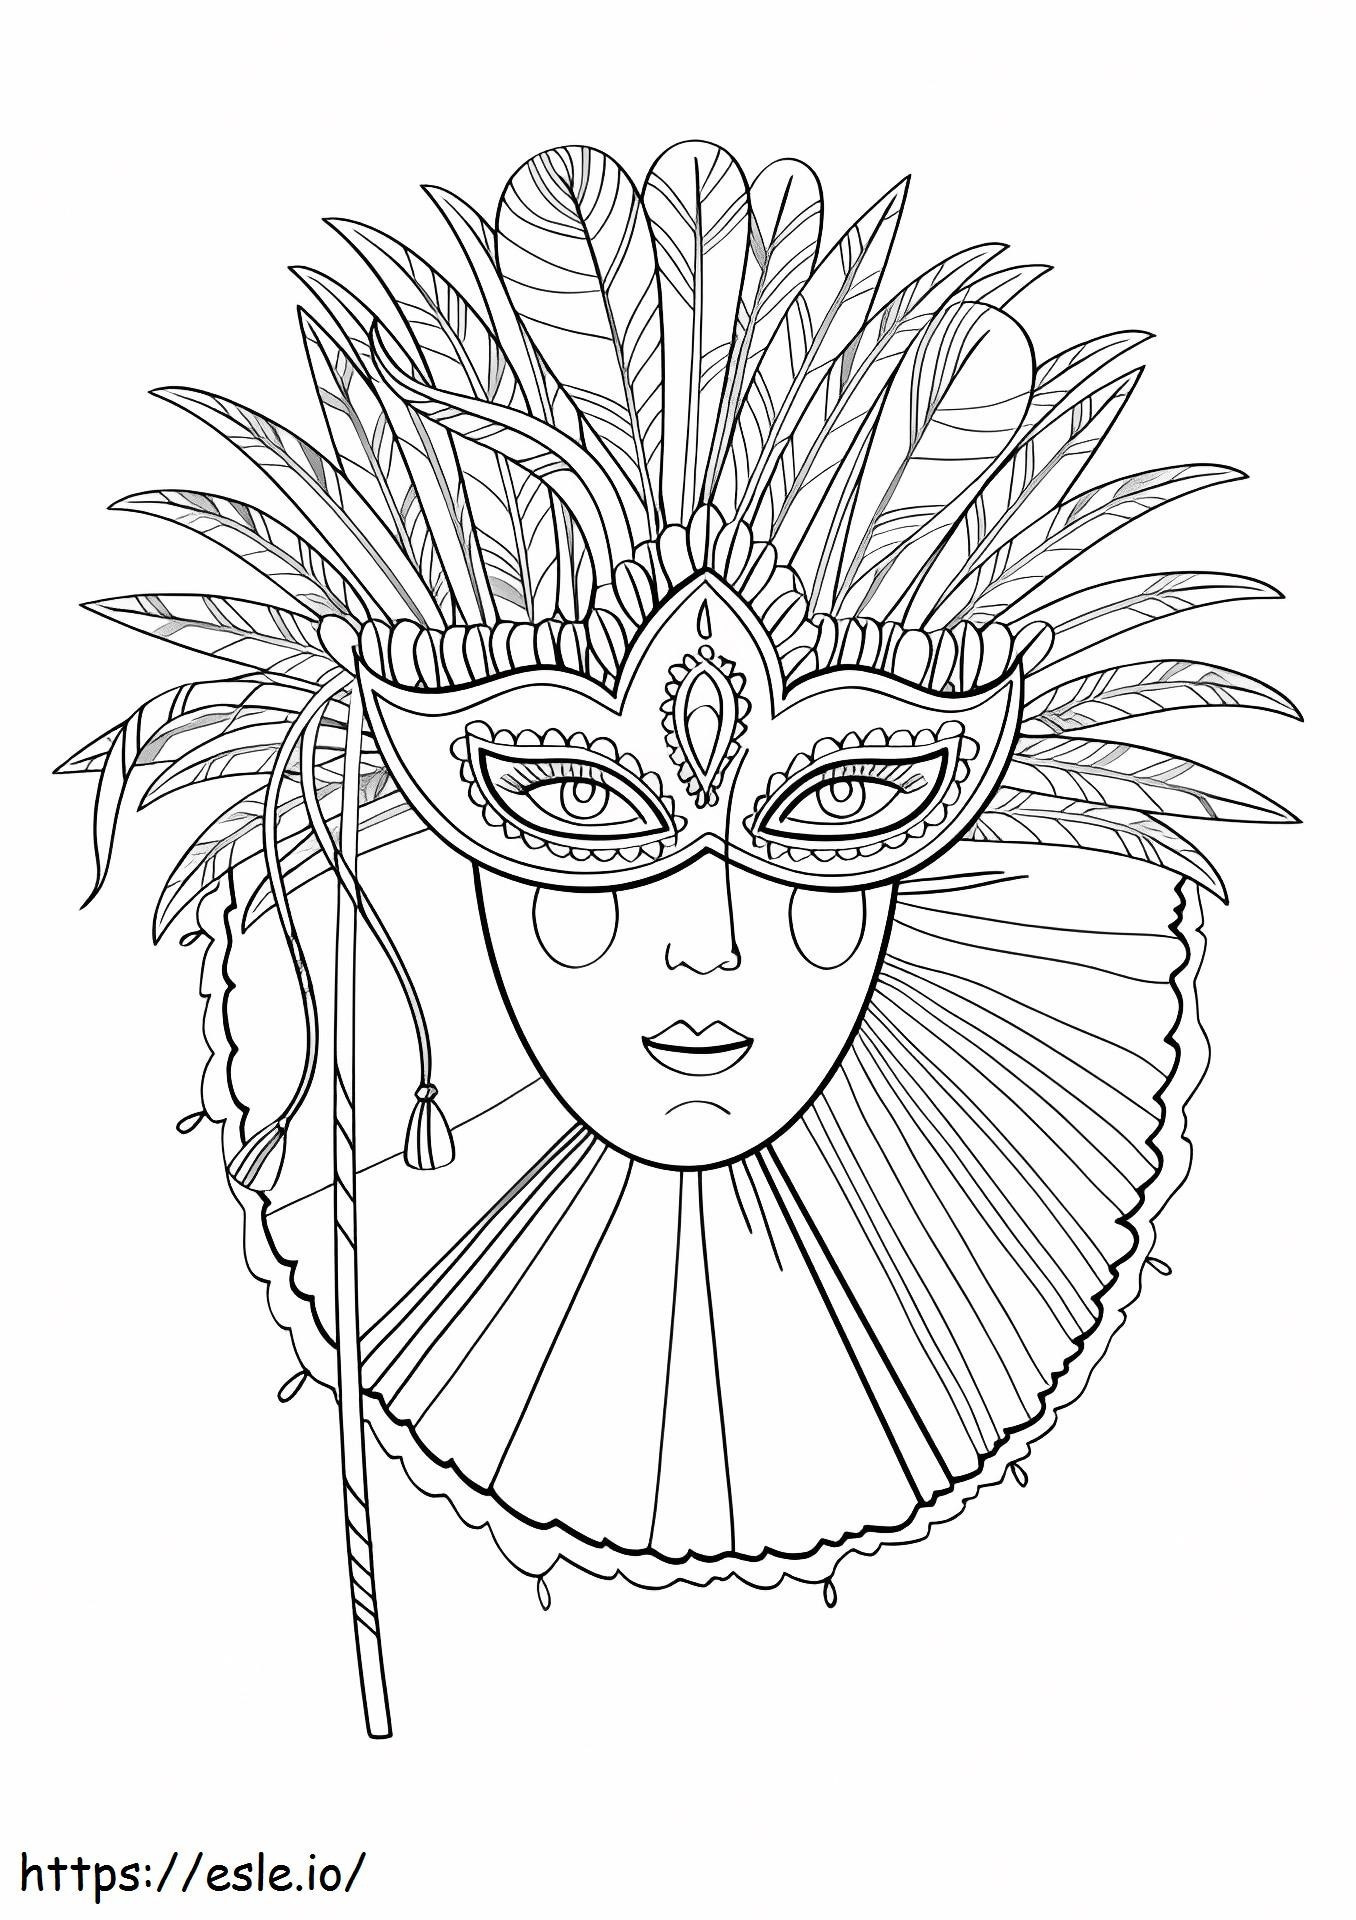 1527062019_Carnavalmasker kleurplaat kleurplaat